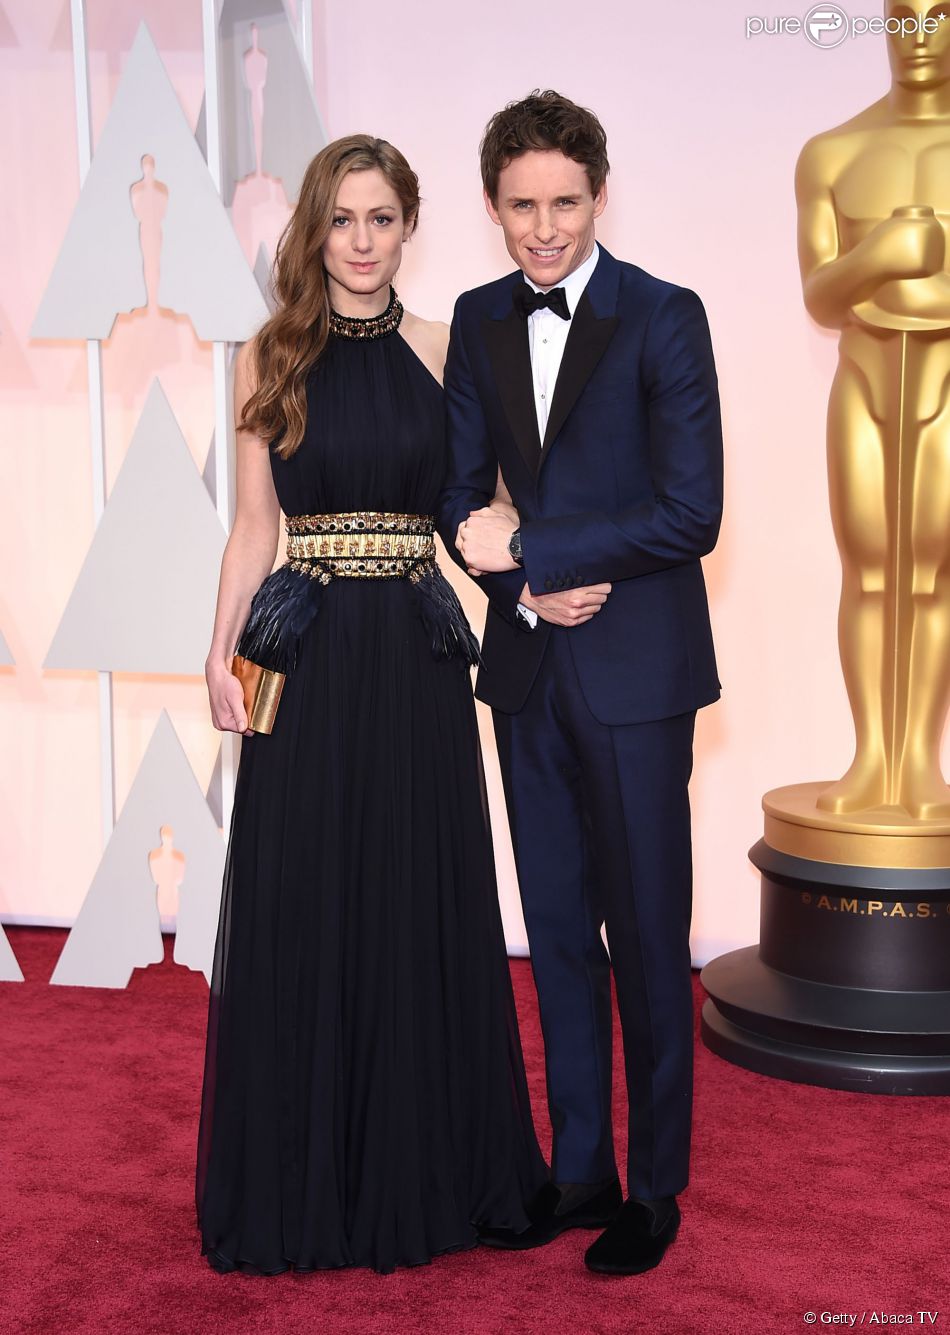 Eddie Redmayne, Oscar du meilleur acteur, brille avec son épouse Hannah Bagshawe.